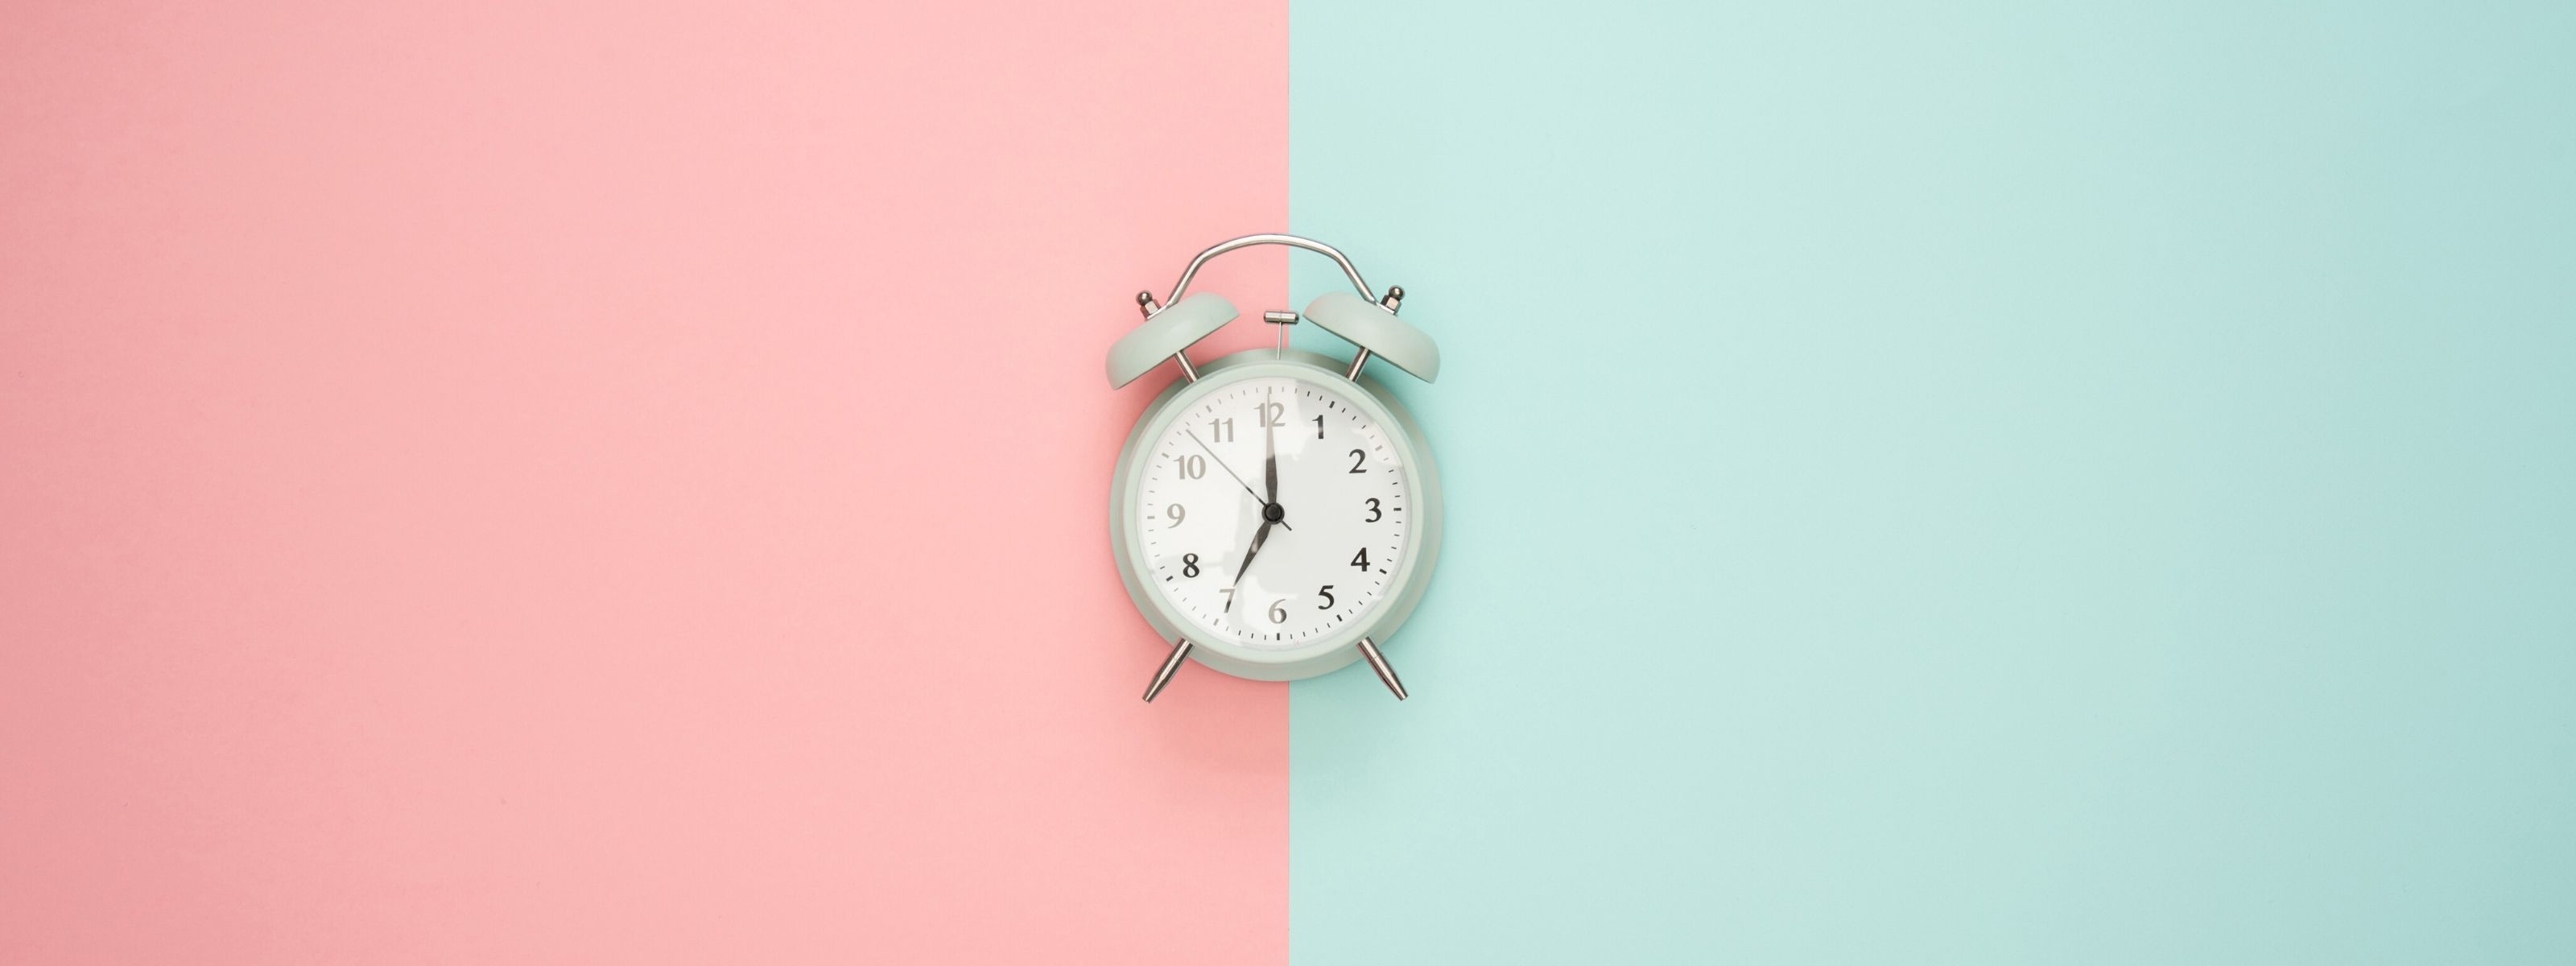 Szary, klasyczny zegar - budzik na tle w dwóch kolorach - różowym i niebieskim